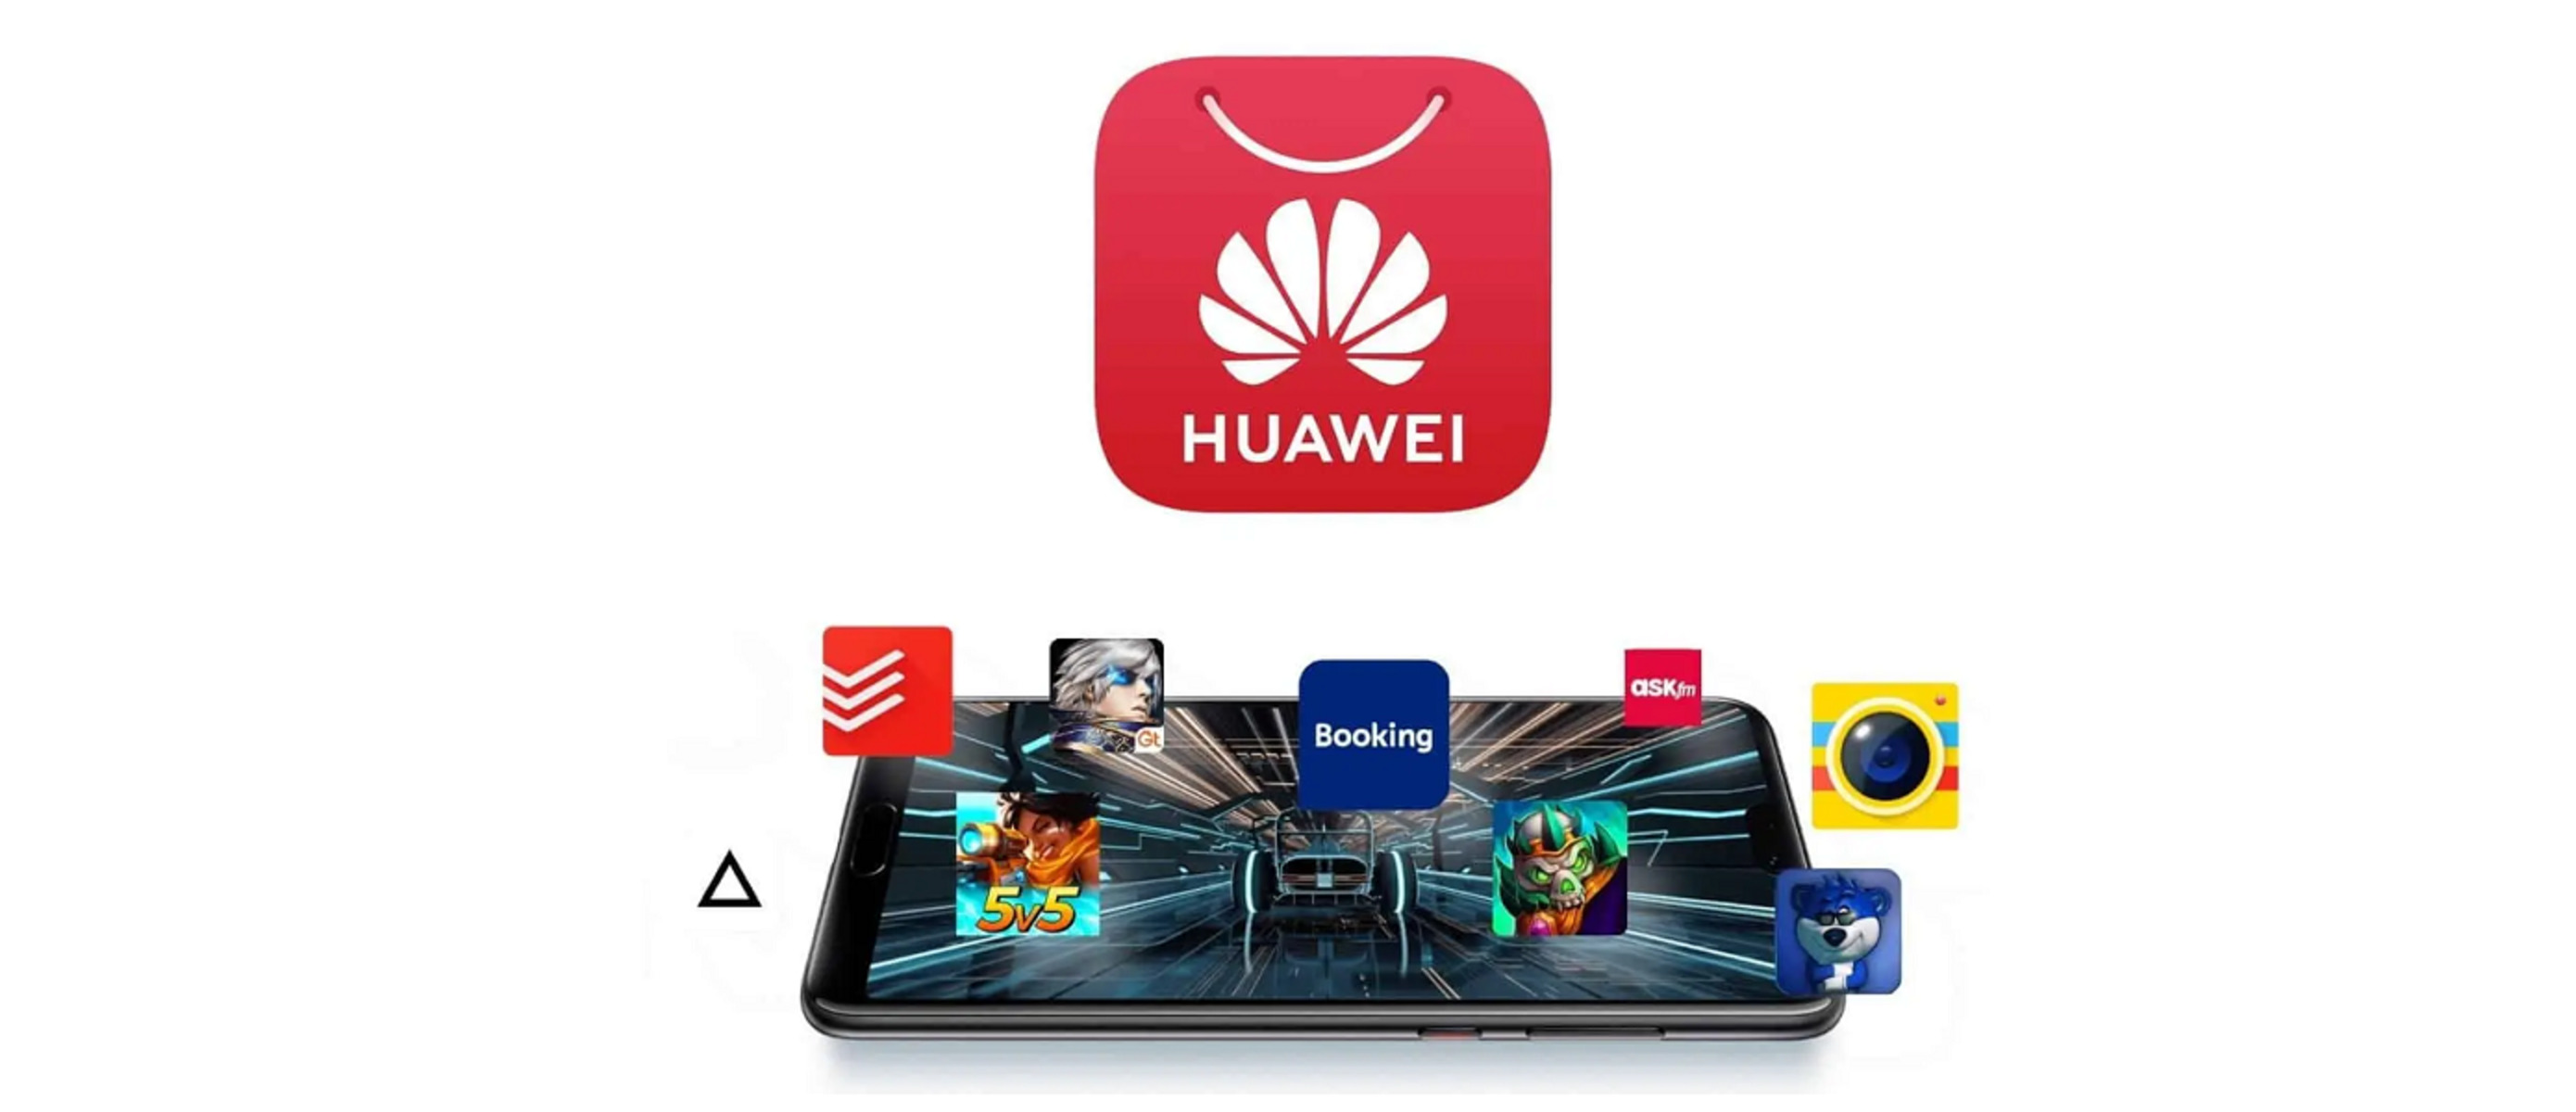 Https appgallery huawei ru. Huawei магазин приложений. Хуавей APPGALLERY. Магазин Huawei app Gallery. Магазин приложений Huawei APPGALLERY.